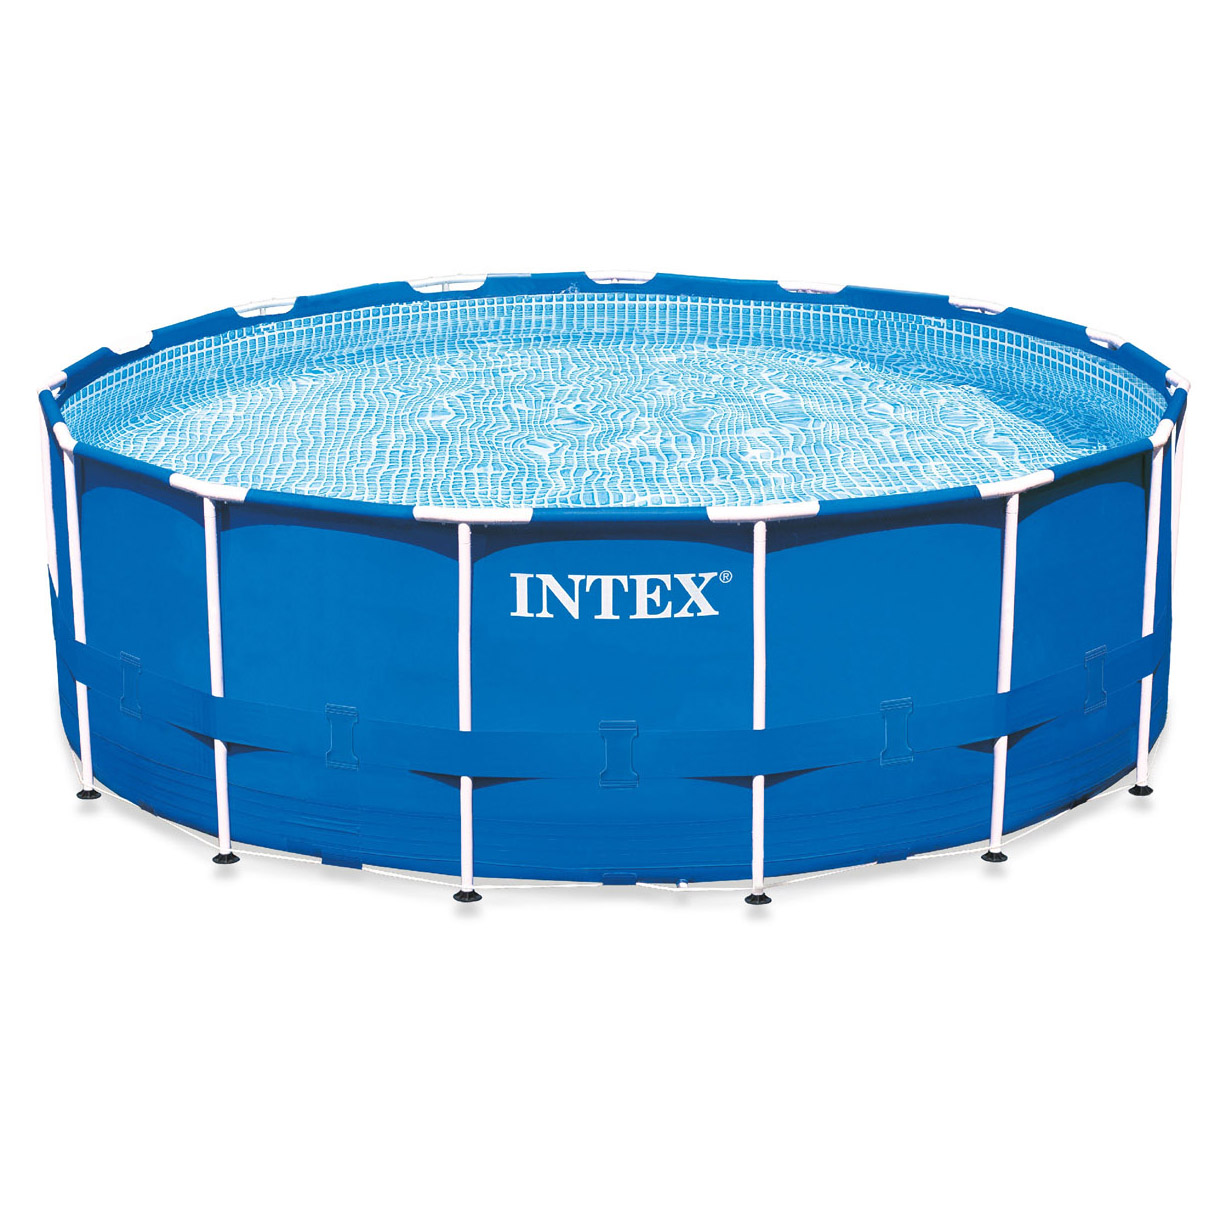 Intex Metal Frame Pool Set, 15-Feet by 48-Inch (Older Model) - image 1 of 7